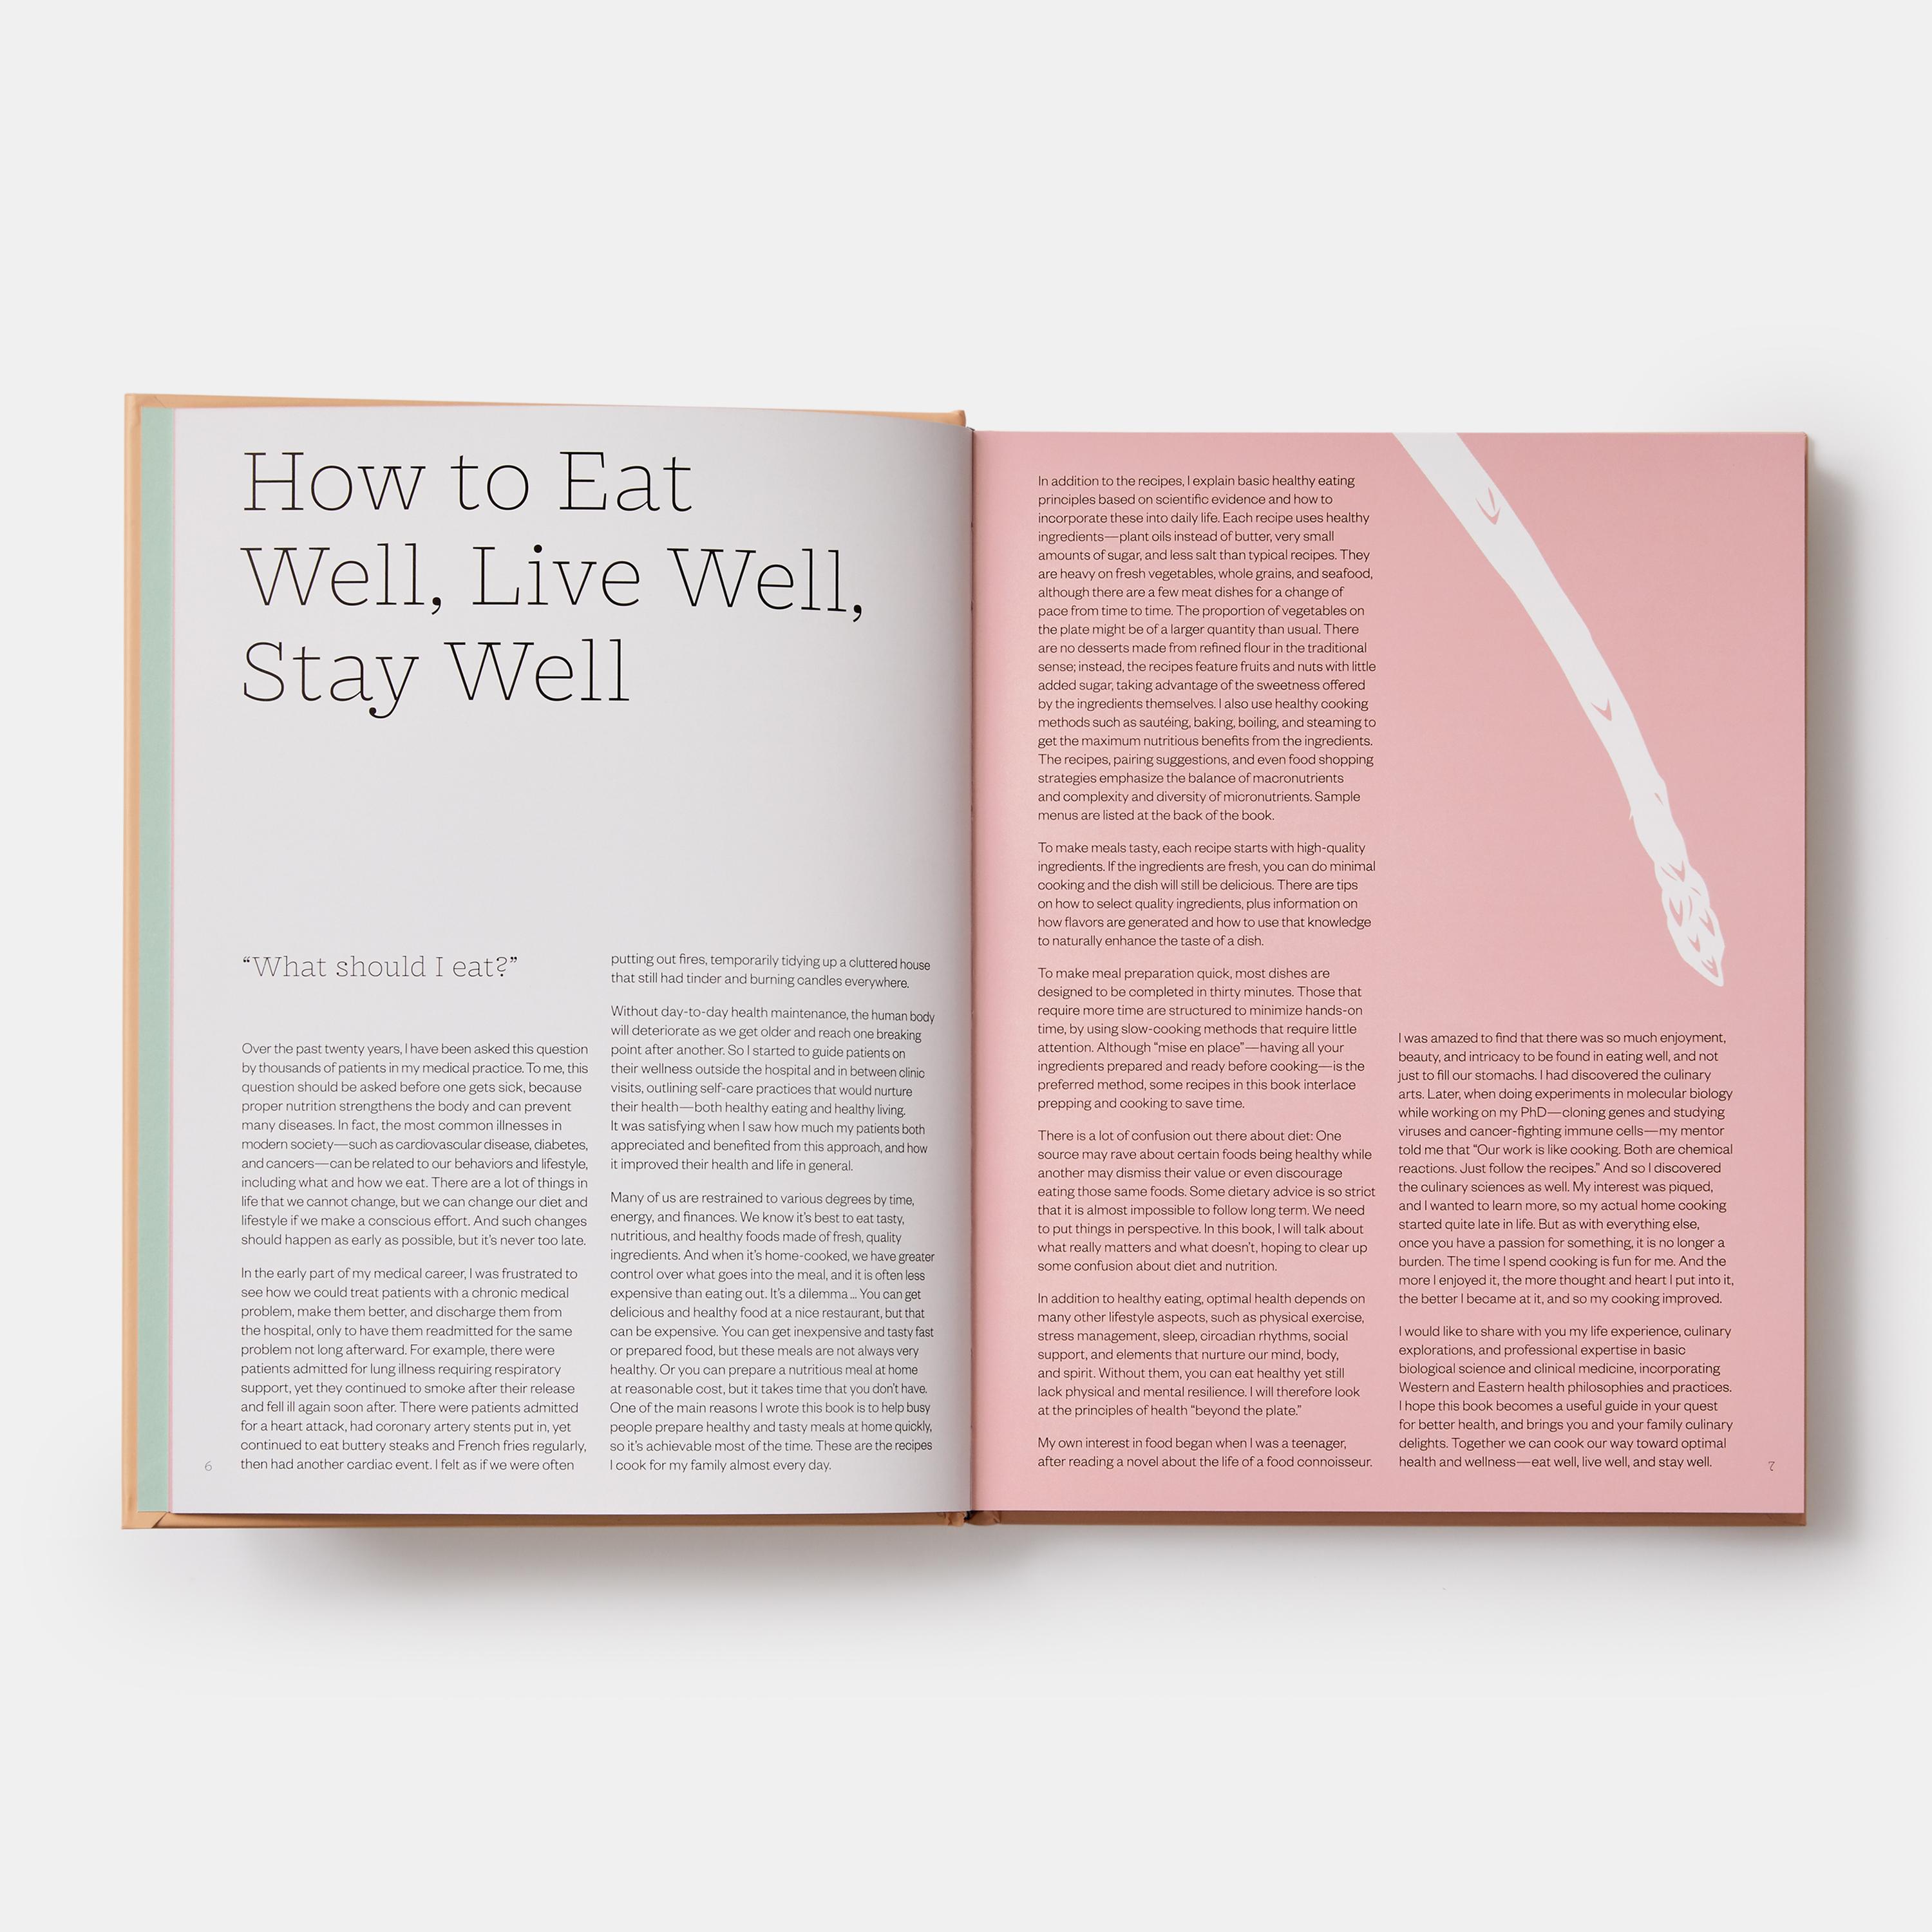 Ce guide accessible, rédigé par un médecin de renommée mondiale et apprécié de tous, propose 100 recettes délicieuses et éprouvées pour une vie saine - pour bien manger, bien vivre et rester en bonne santé

Pour la première fois, Gary Deng MD,